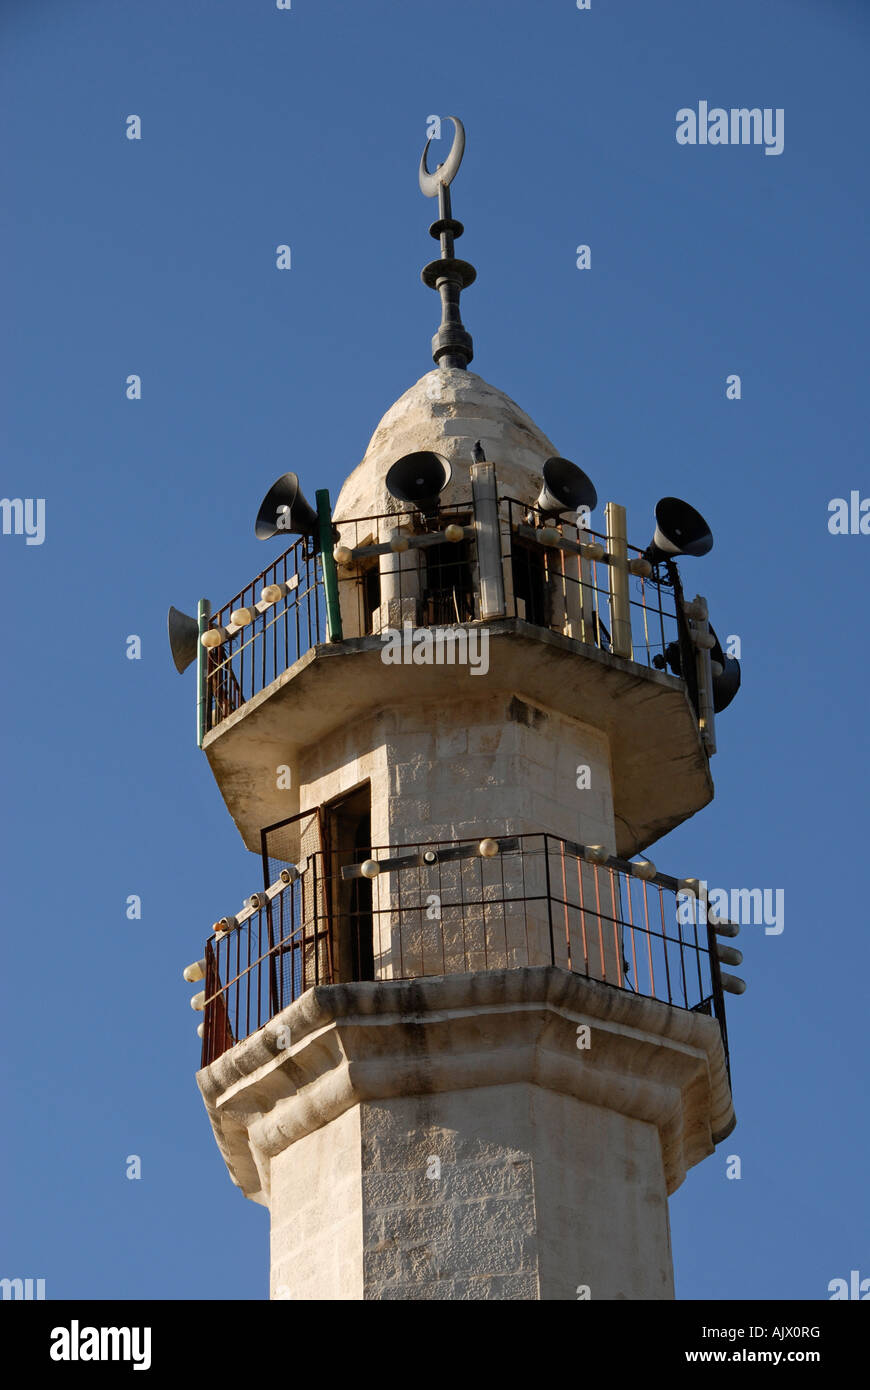 Lautsprecher, die von Muezzin für den „Gebetsaufruf“ im Minarett einer  Moschee in Abu Ghosch, einem arabisch-israelischen gemeinderat in der Nähe  von Jerusalem, verwendet werden Stockfotografie - Alamy